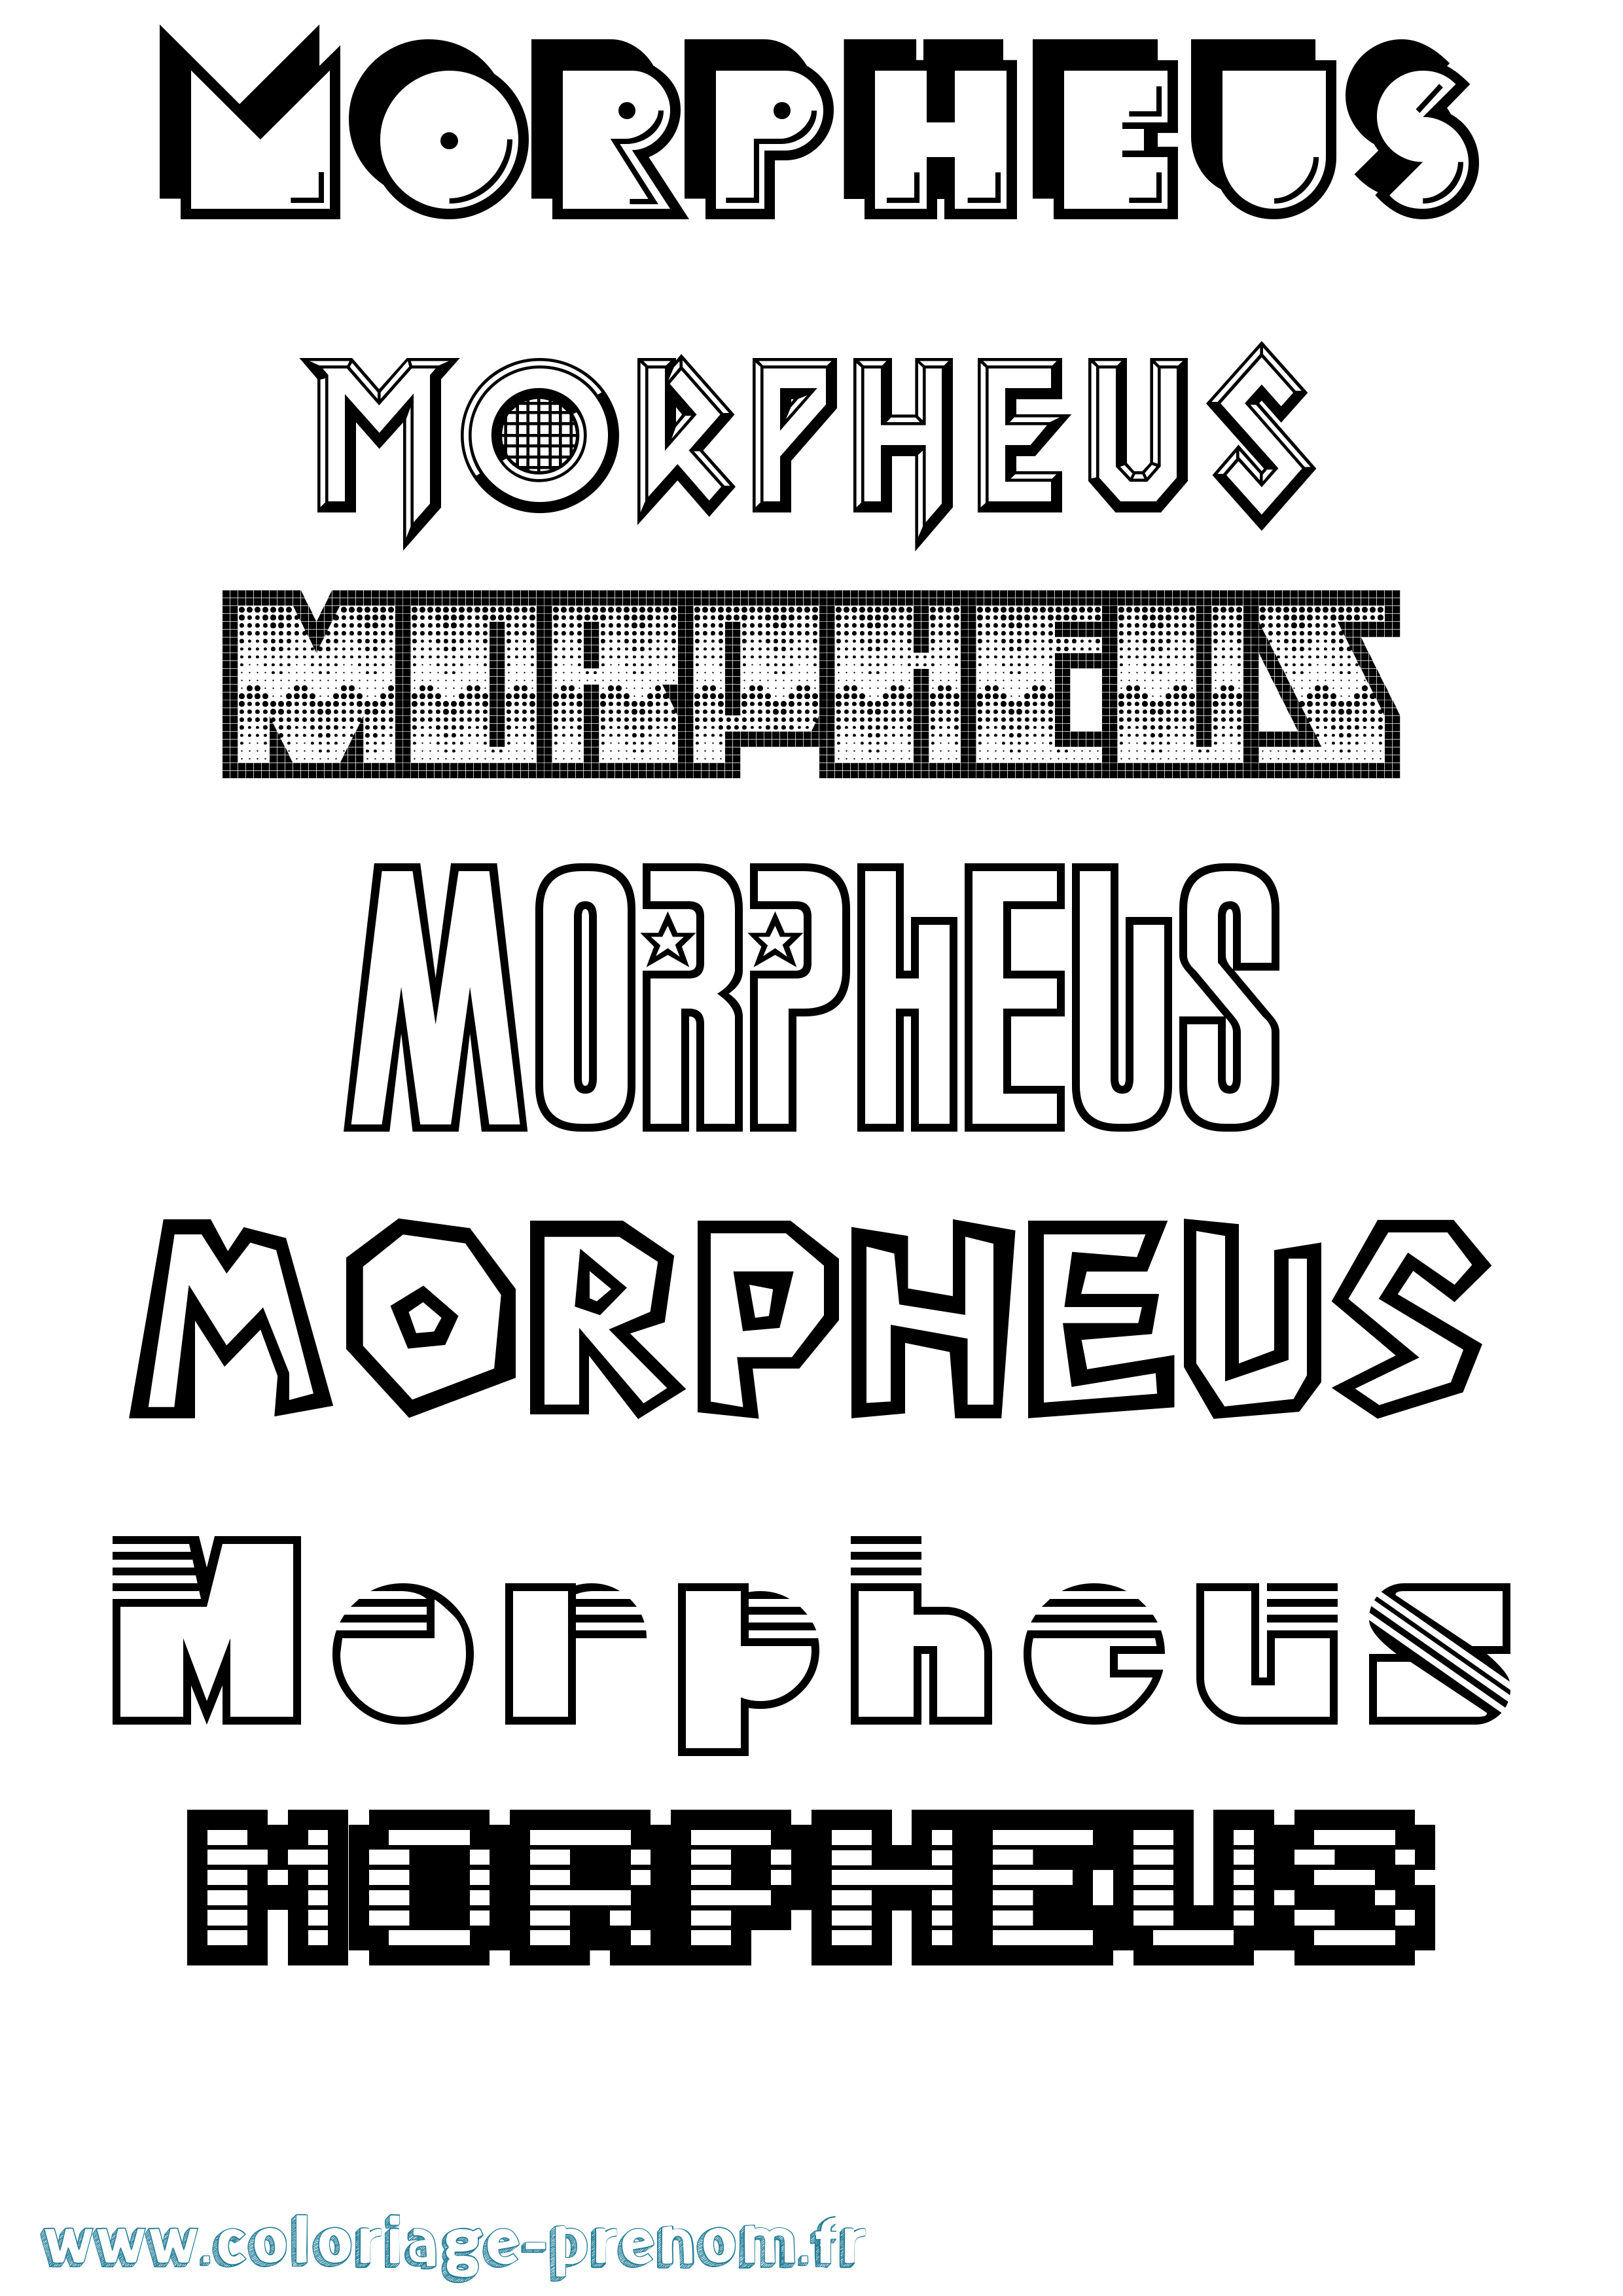 Coloriage prénom Morpheus Jeux Vidéos